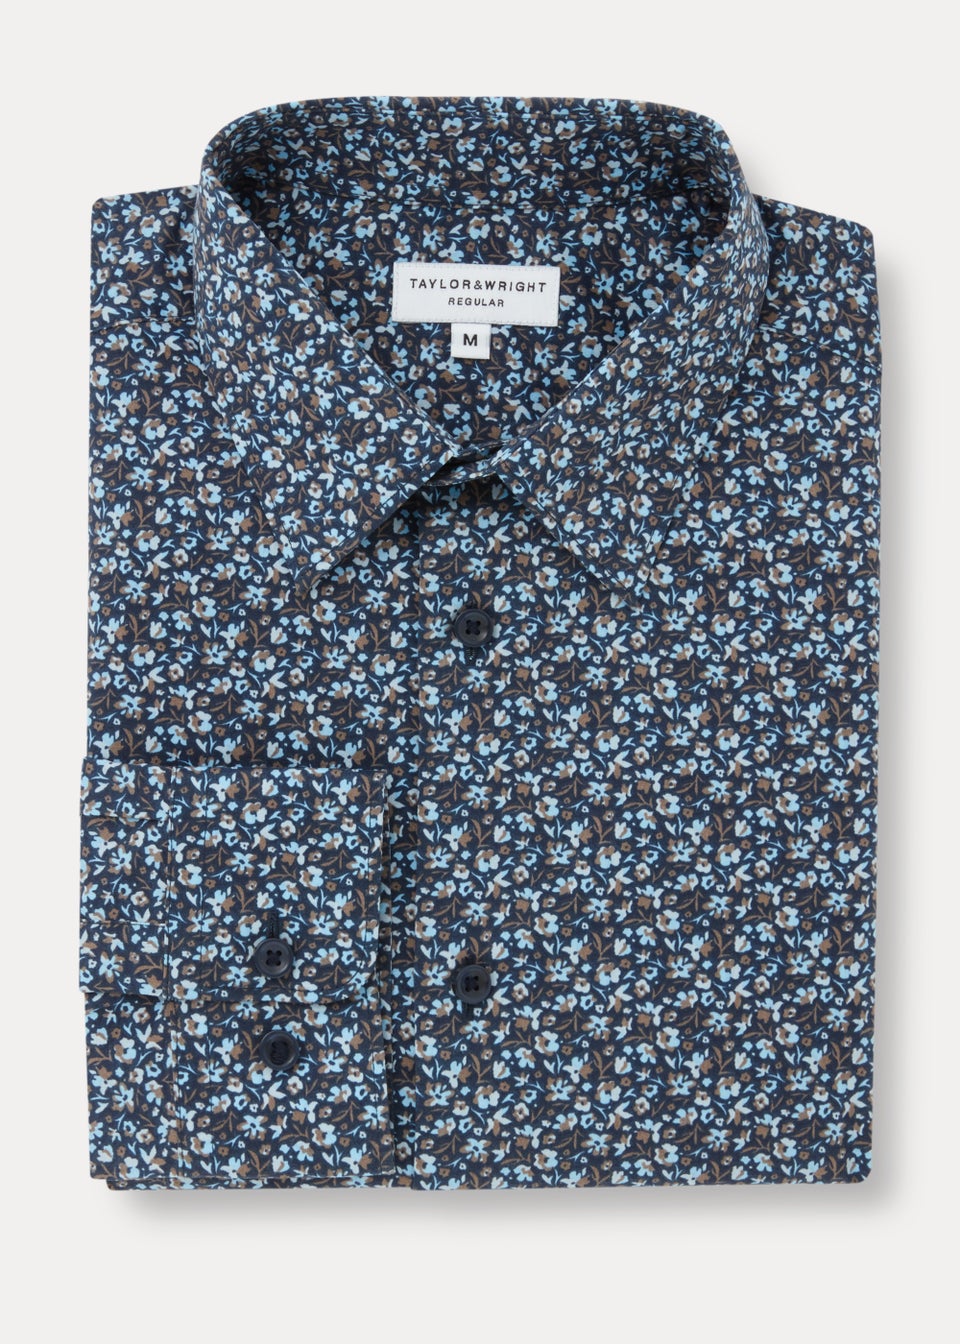 Taylor & Wright Navy Floral Print Regular Fit Shirt - Matalan